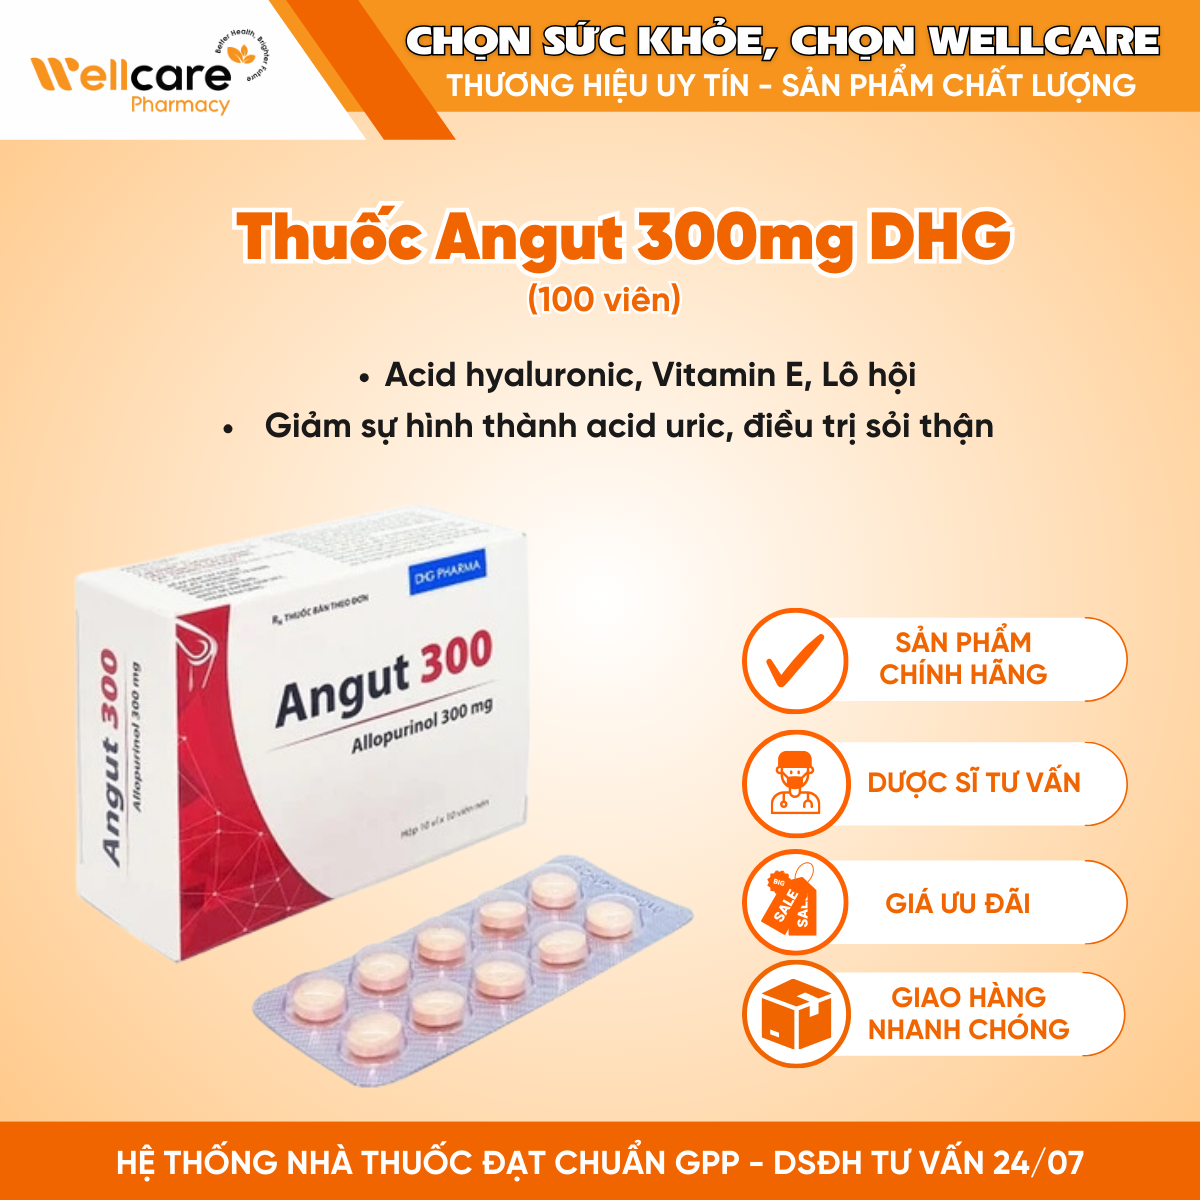 Thuốc Angut 300mg DHG – Hỗ trợ điều trị sỏi thận trong một số trường hợp chỉ định (100 viên)